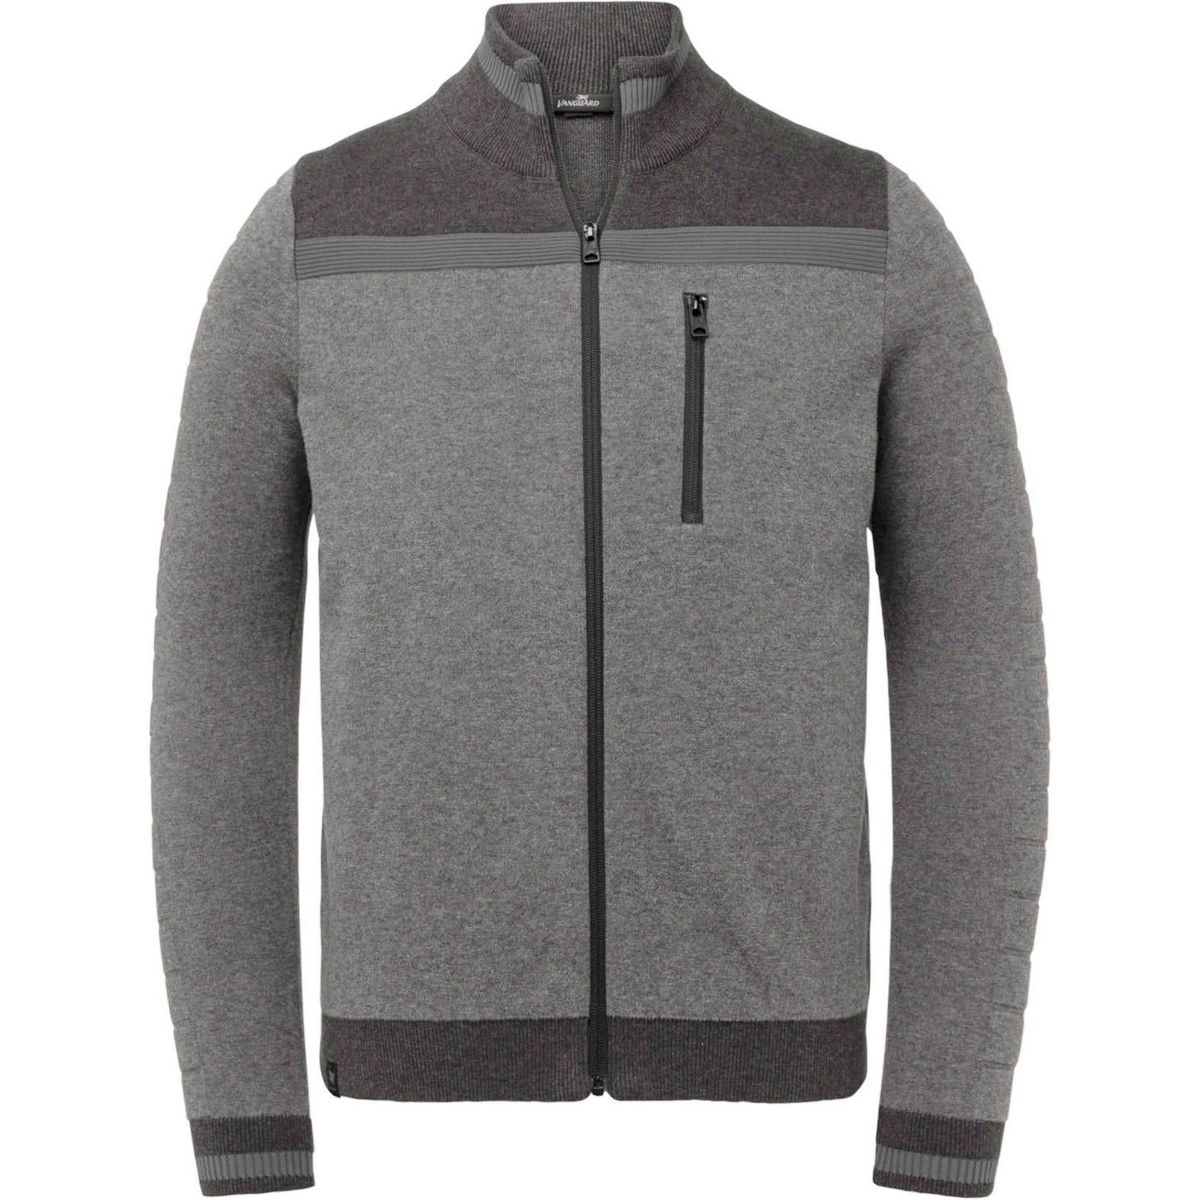 Textiel Heren Sweaters / Sweatshirts Vanguard Vest Melange Grijs Grijs